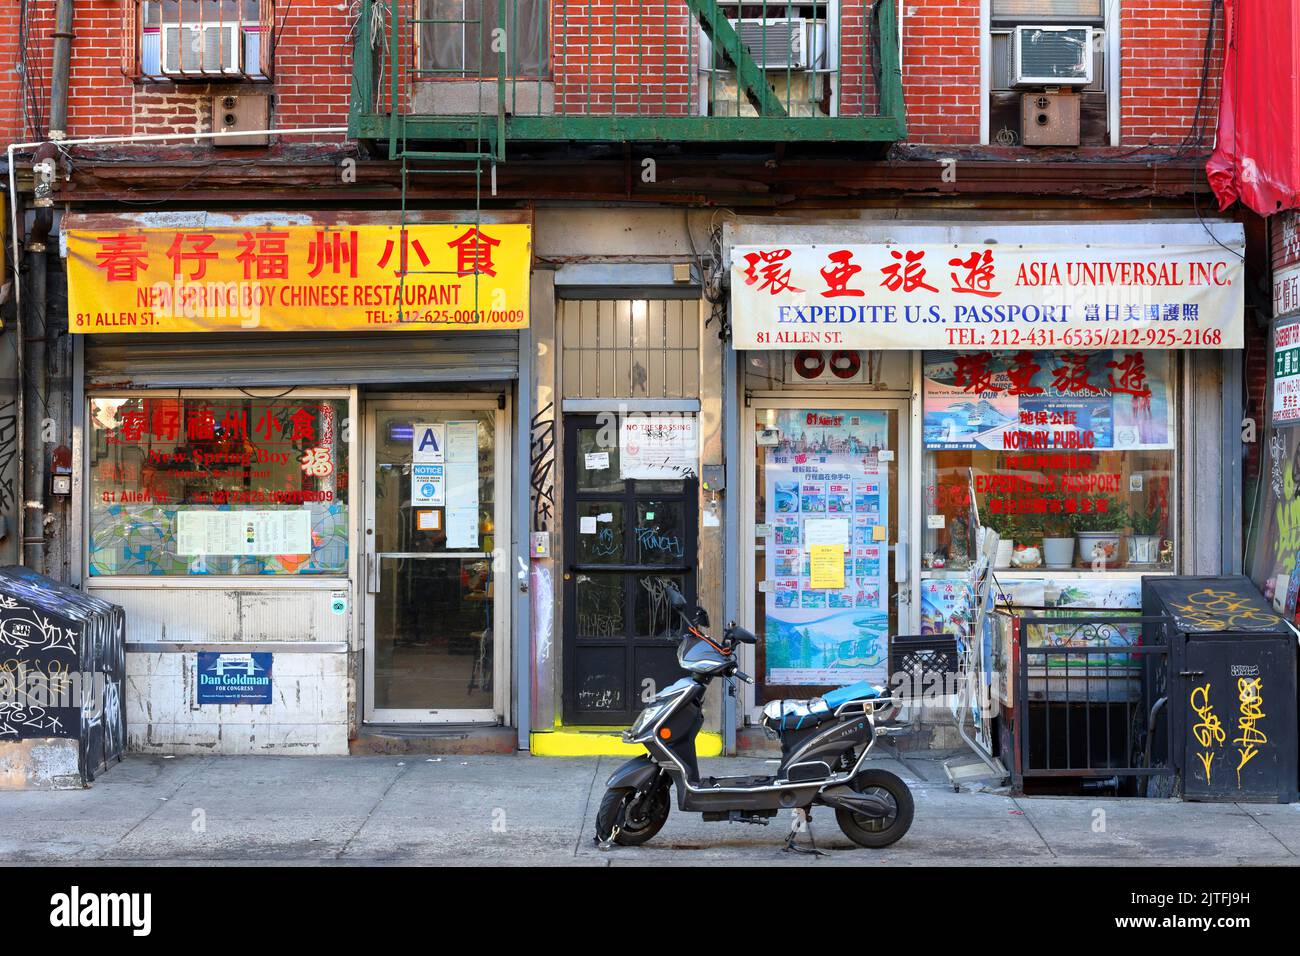 New Spring Boy, Asia Universal, 81 Allen St, New York, New York, New York photo d'un restaurant et d'une agence de voyages dans le quartier chinois de Manhattan. Banque D'Images